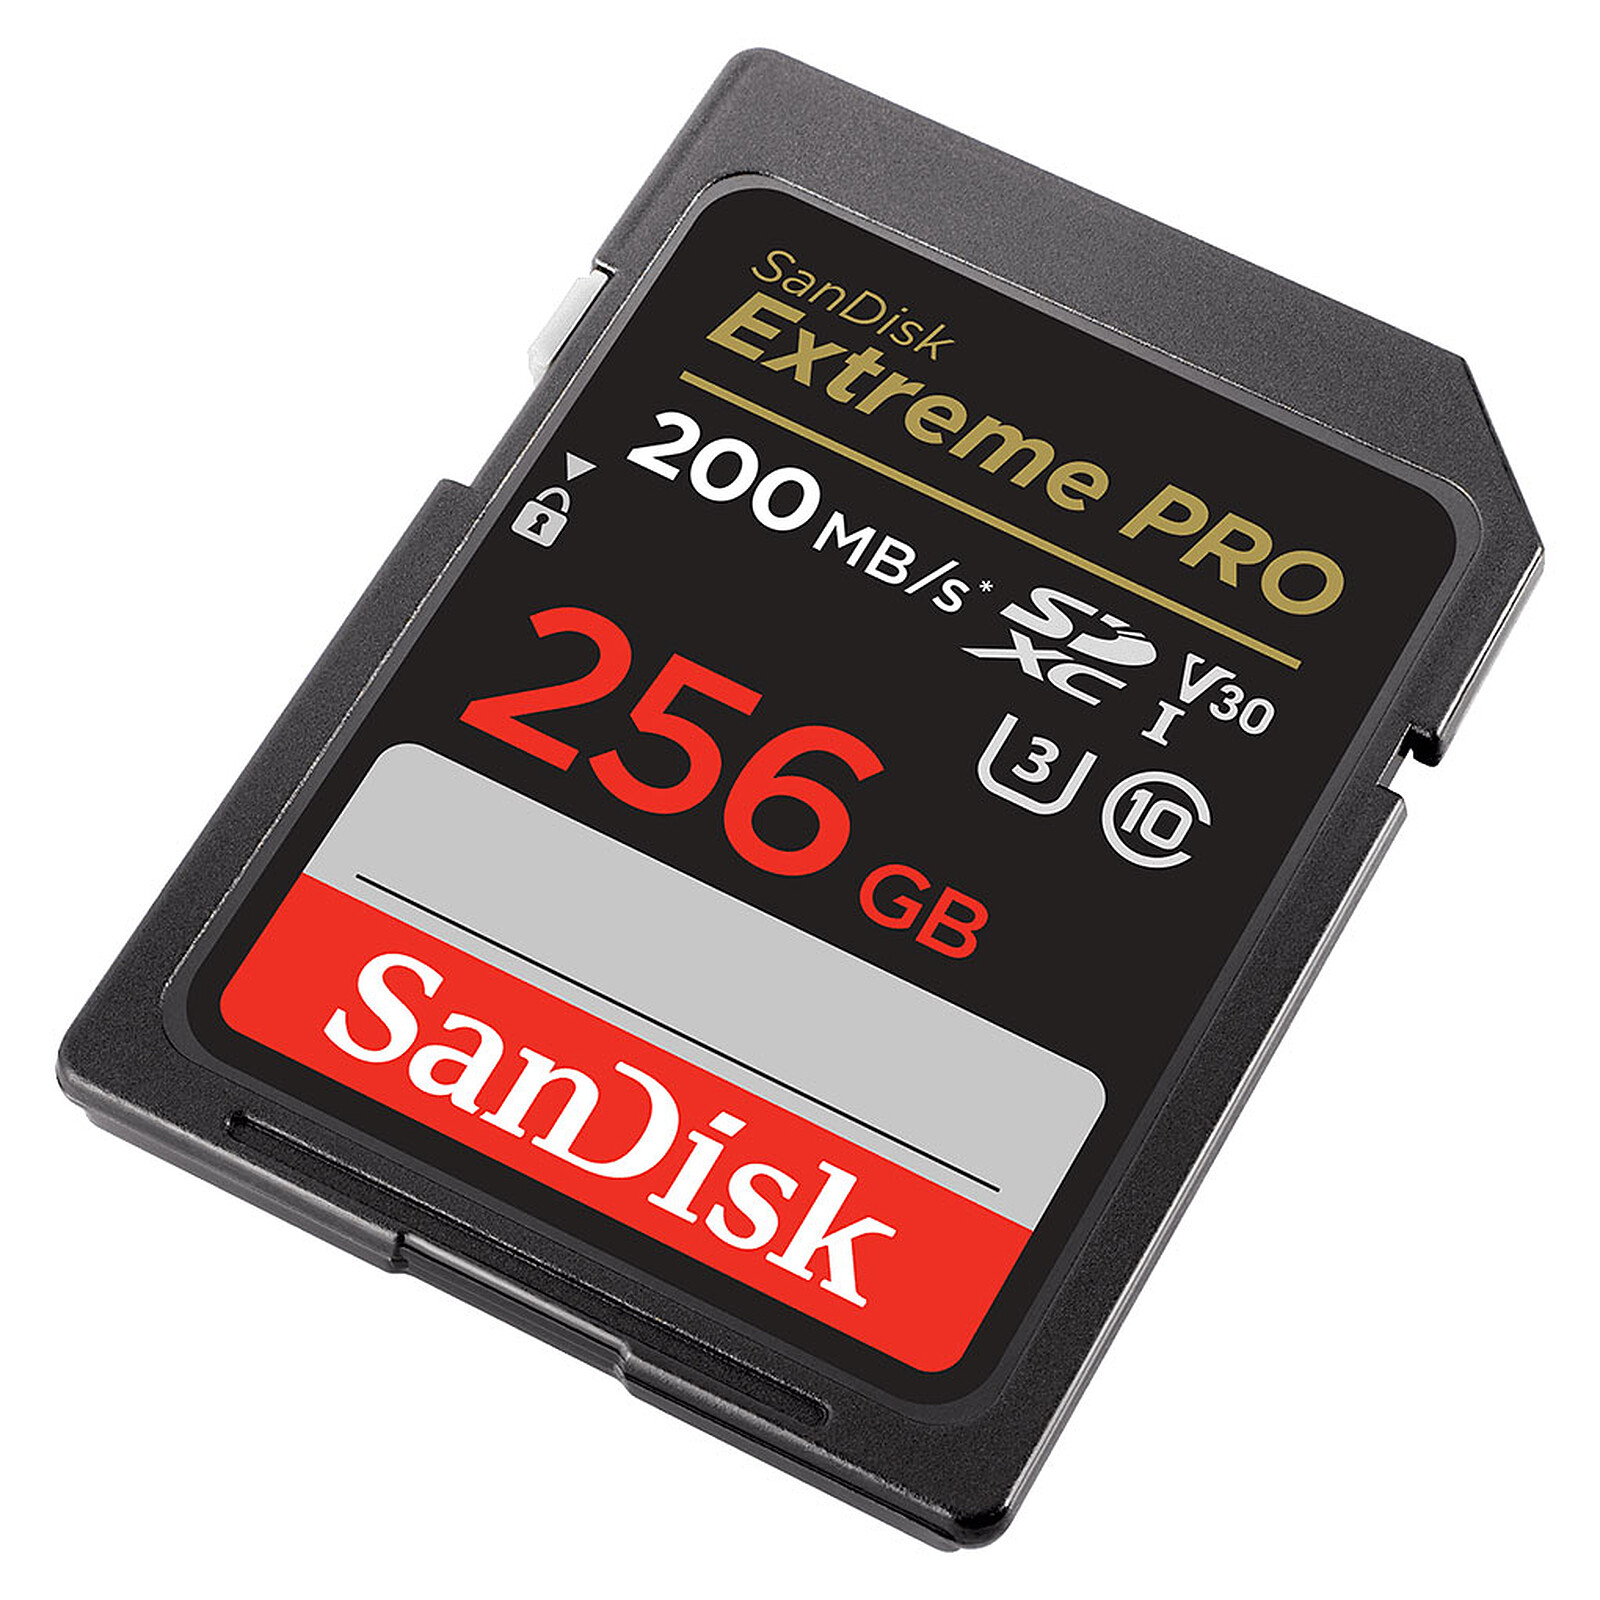 Sandisk : nouvelle carte mémoire 4 Go pour la PSP